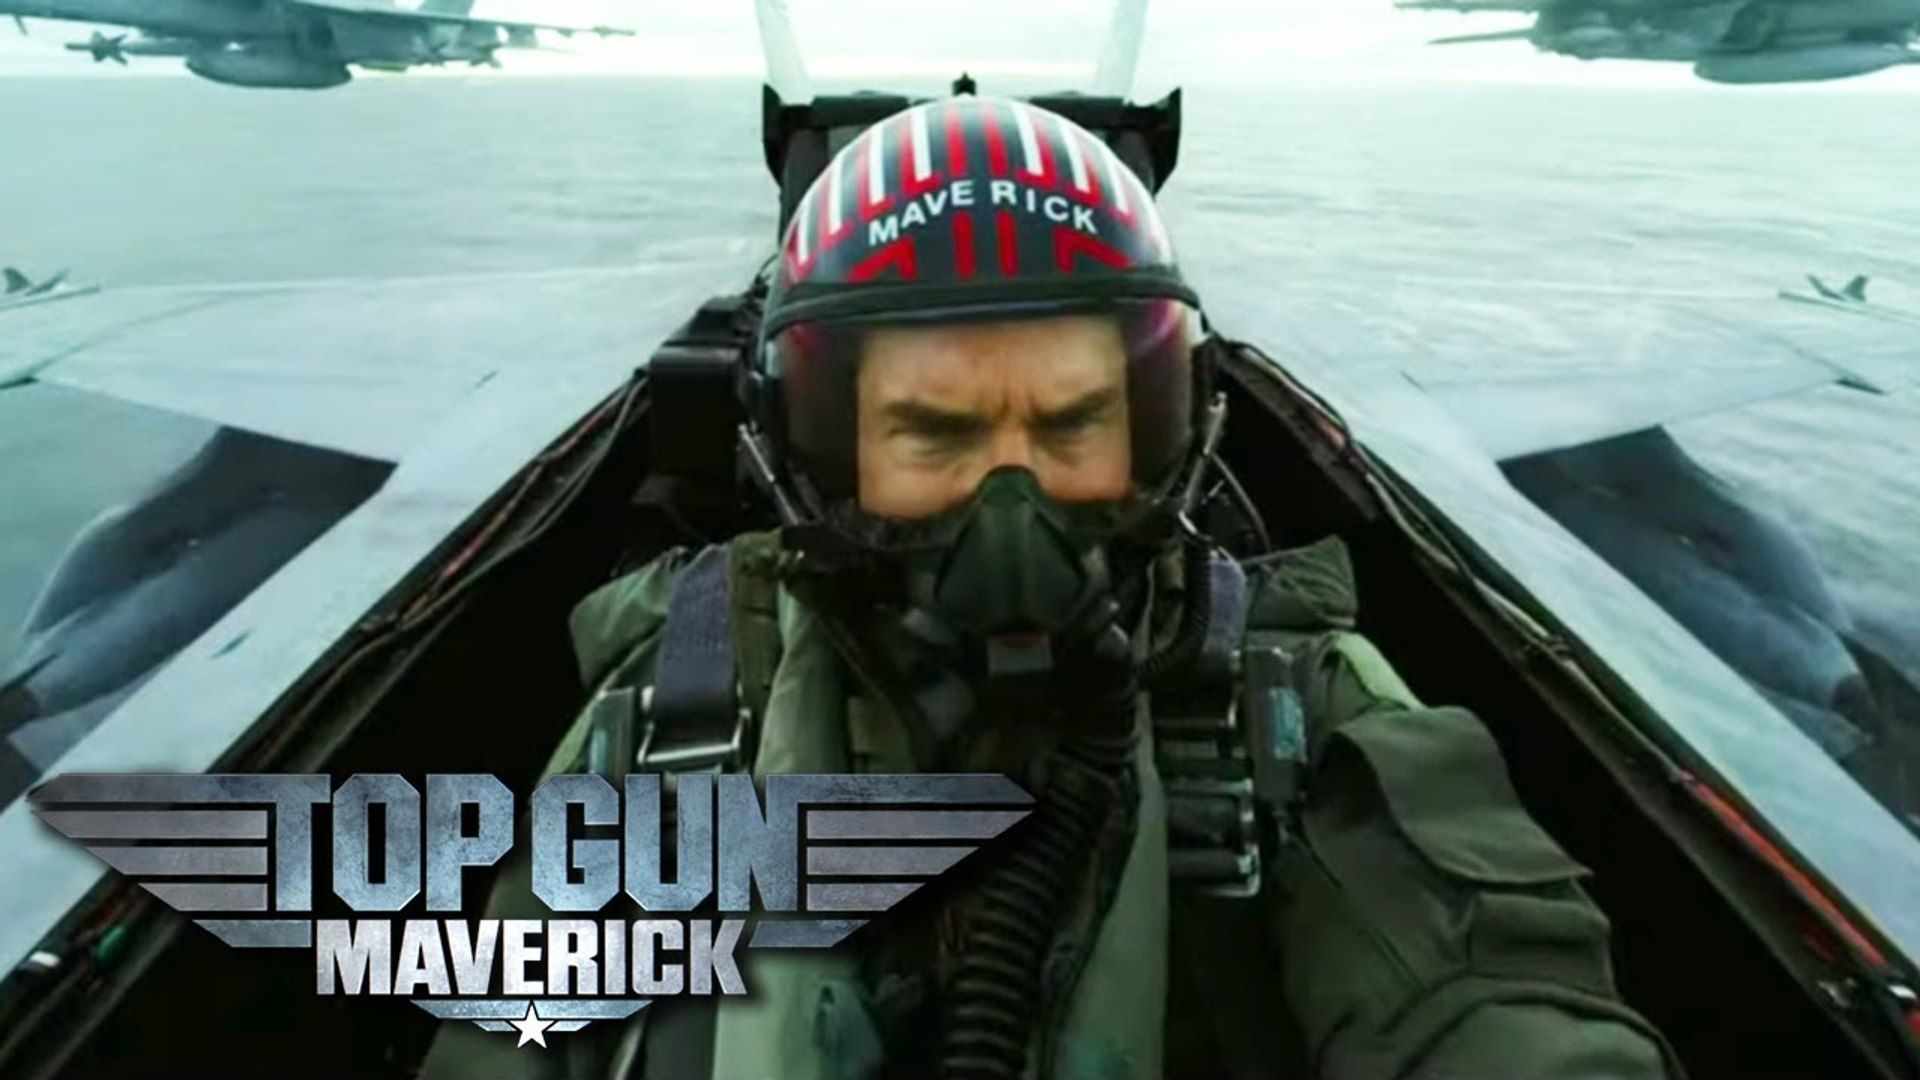 Top Gun Maverick